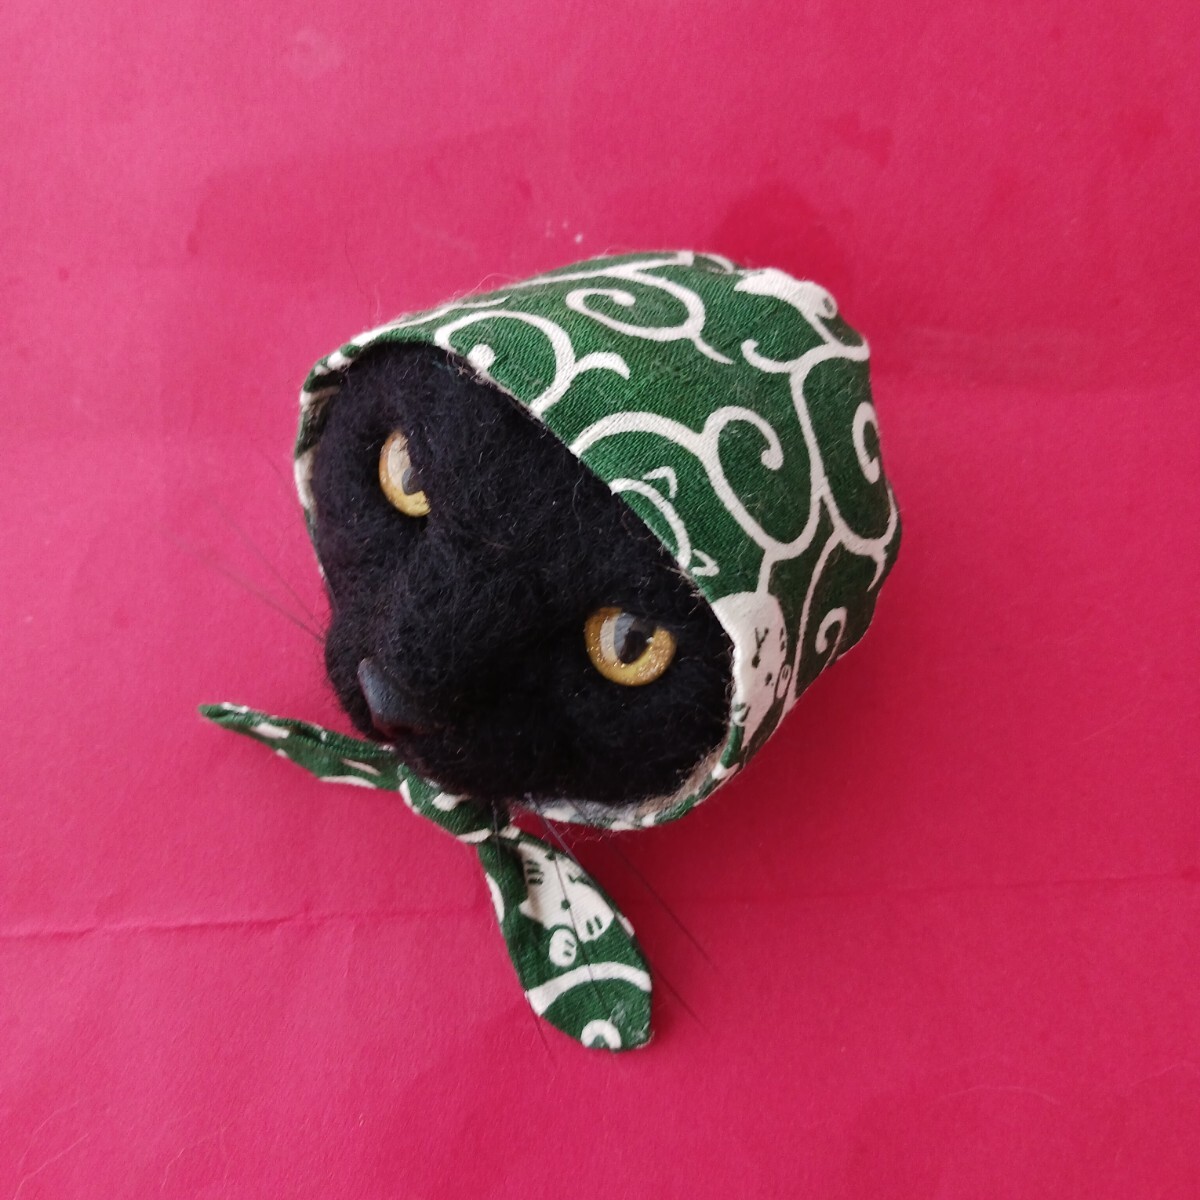 もたこ 羊毛フェルト猫 黒猫 ほっかむり猫 どろぼう猫 かぶりもの猫 羊毛フェルト黒猫 風呂敷猫 猫柄の風呂敷 羊毛フェルトの黒猫の画像2